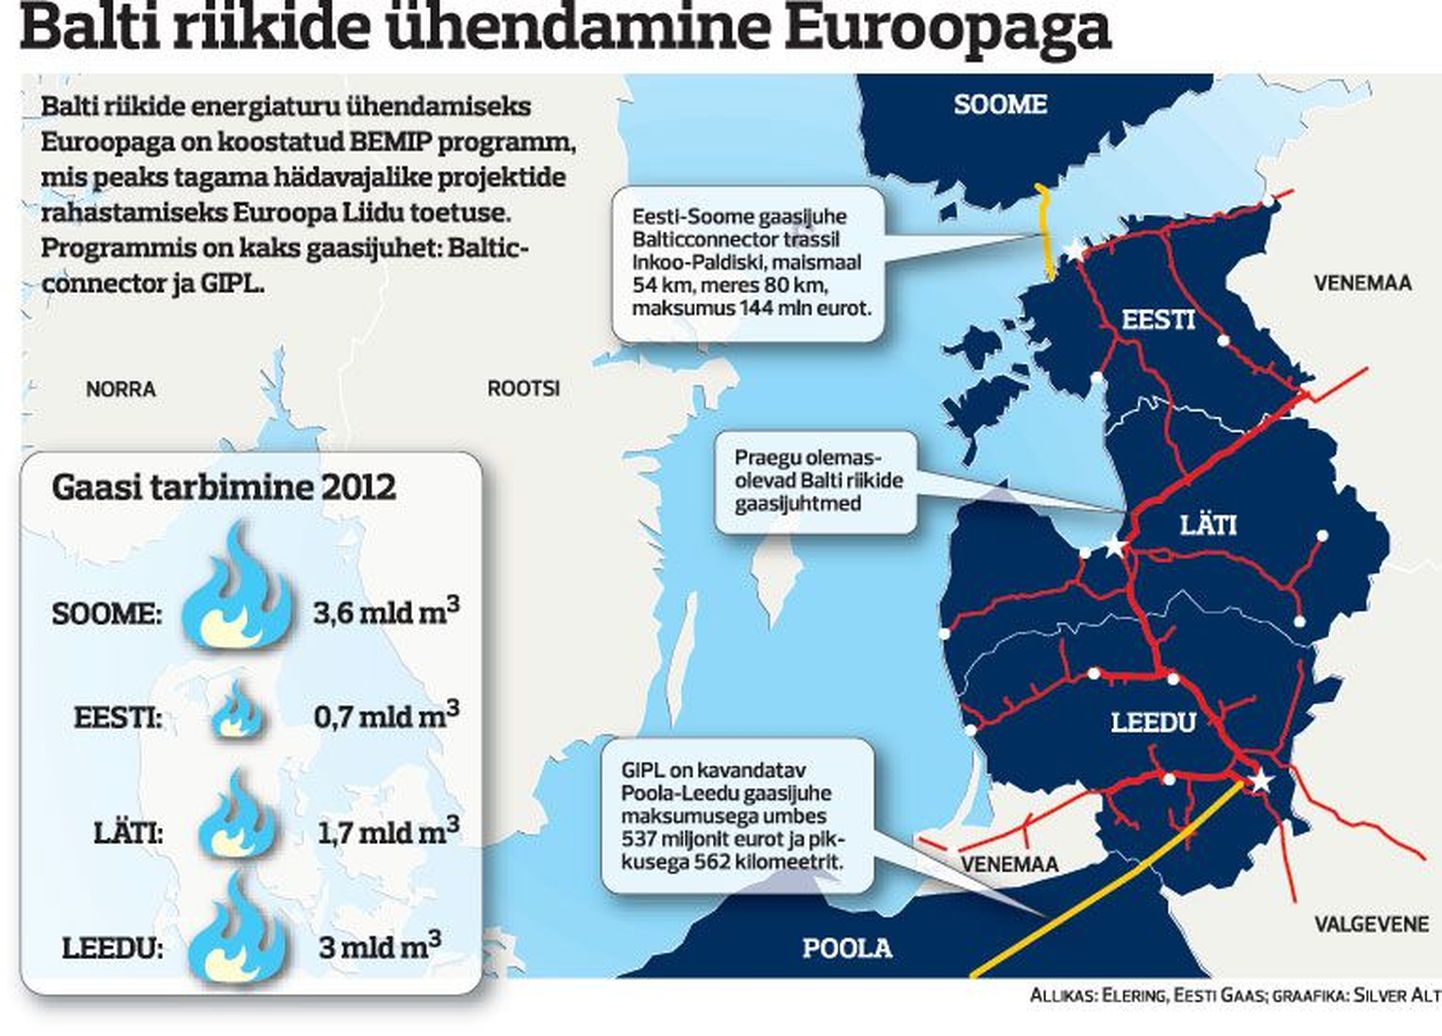 Balti riikide ühendamine Euroopaga.